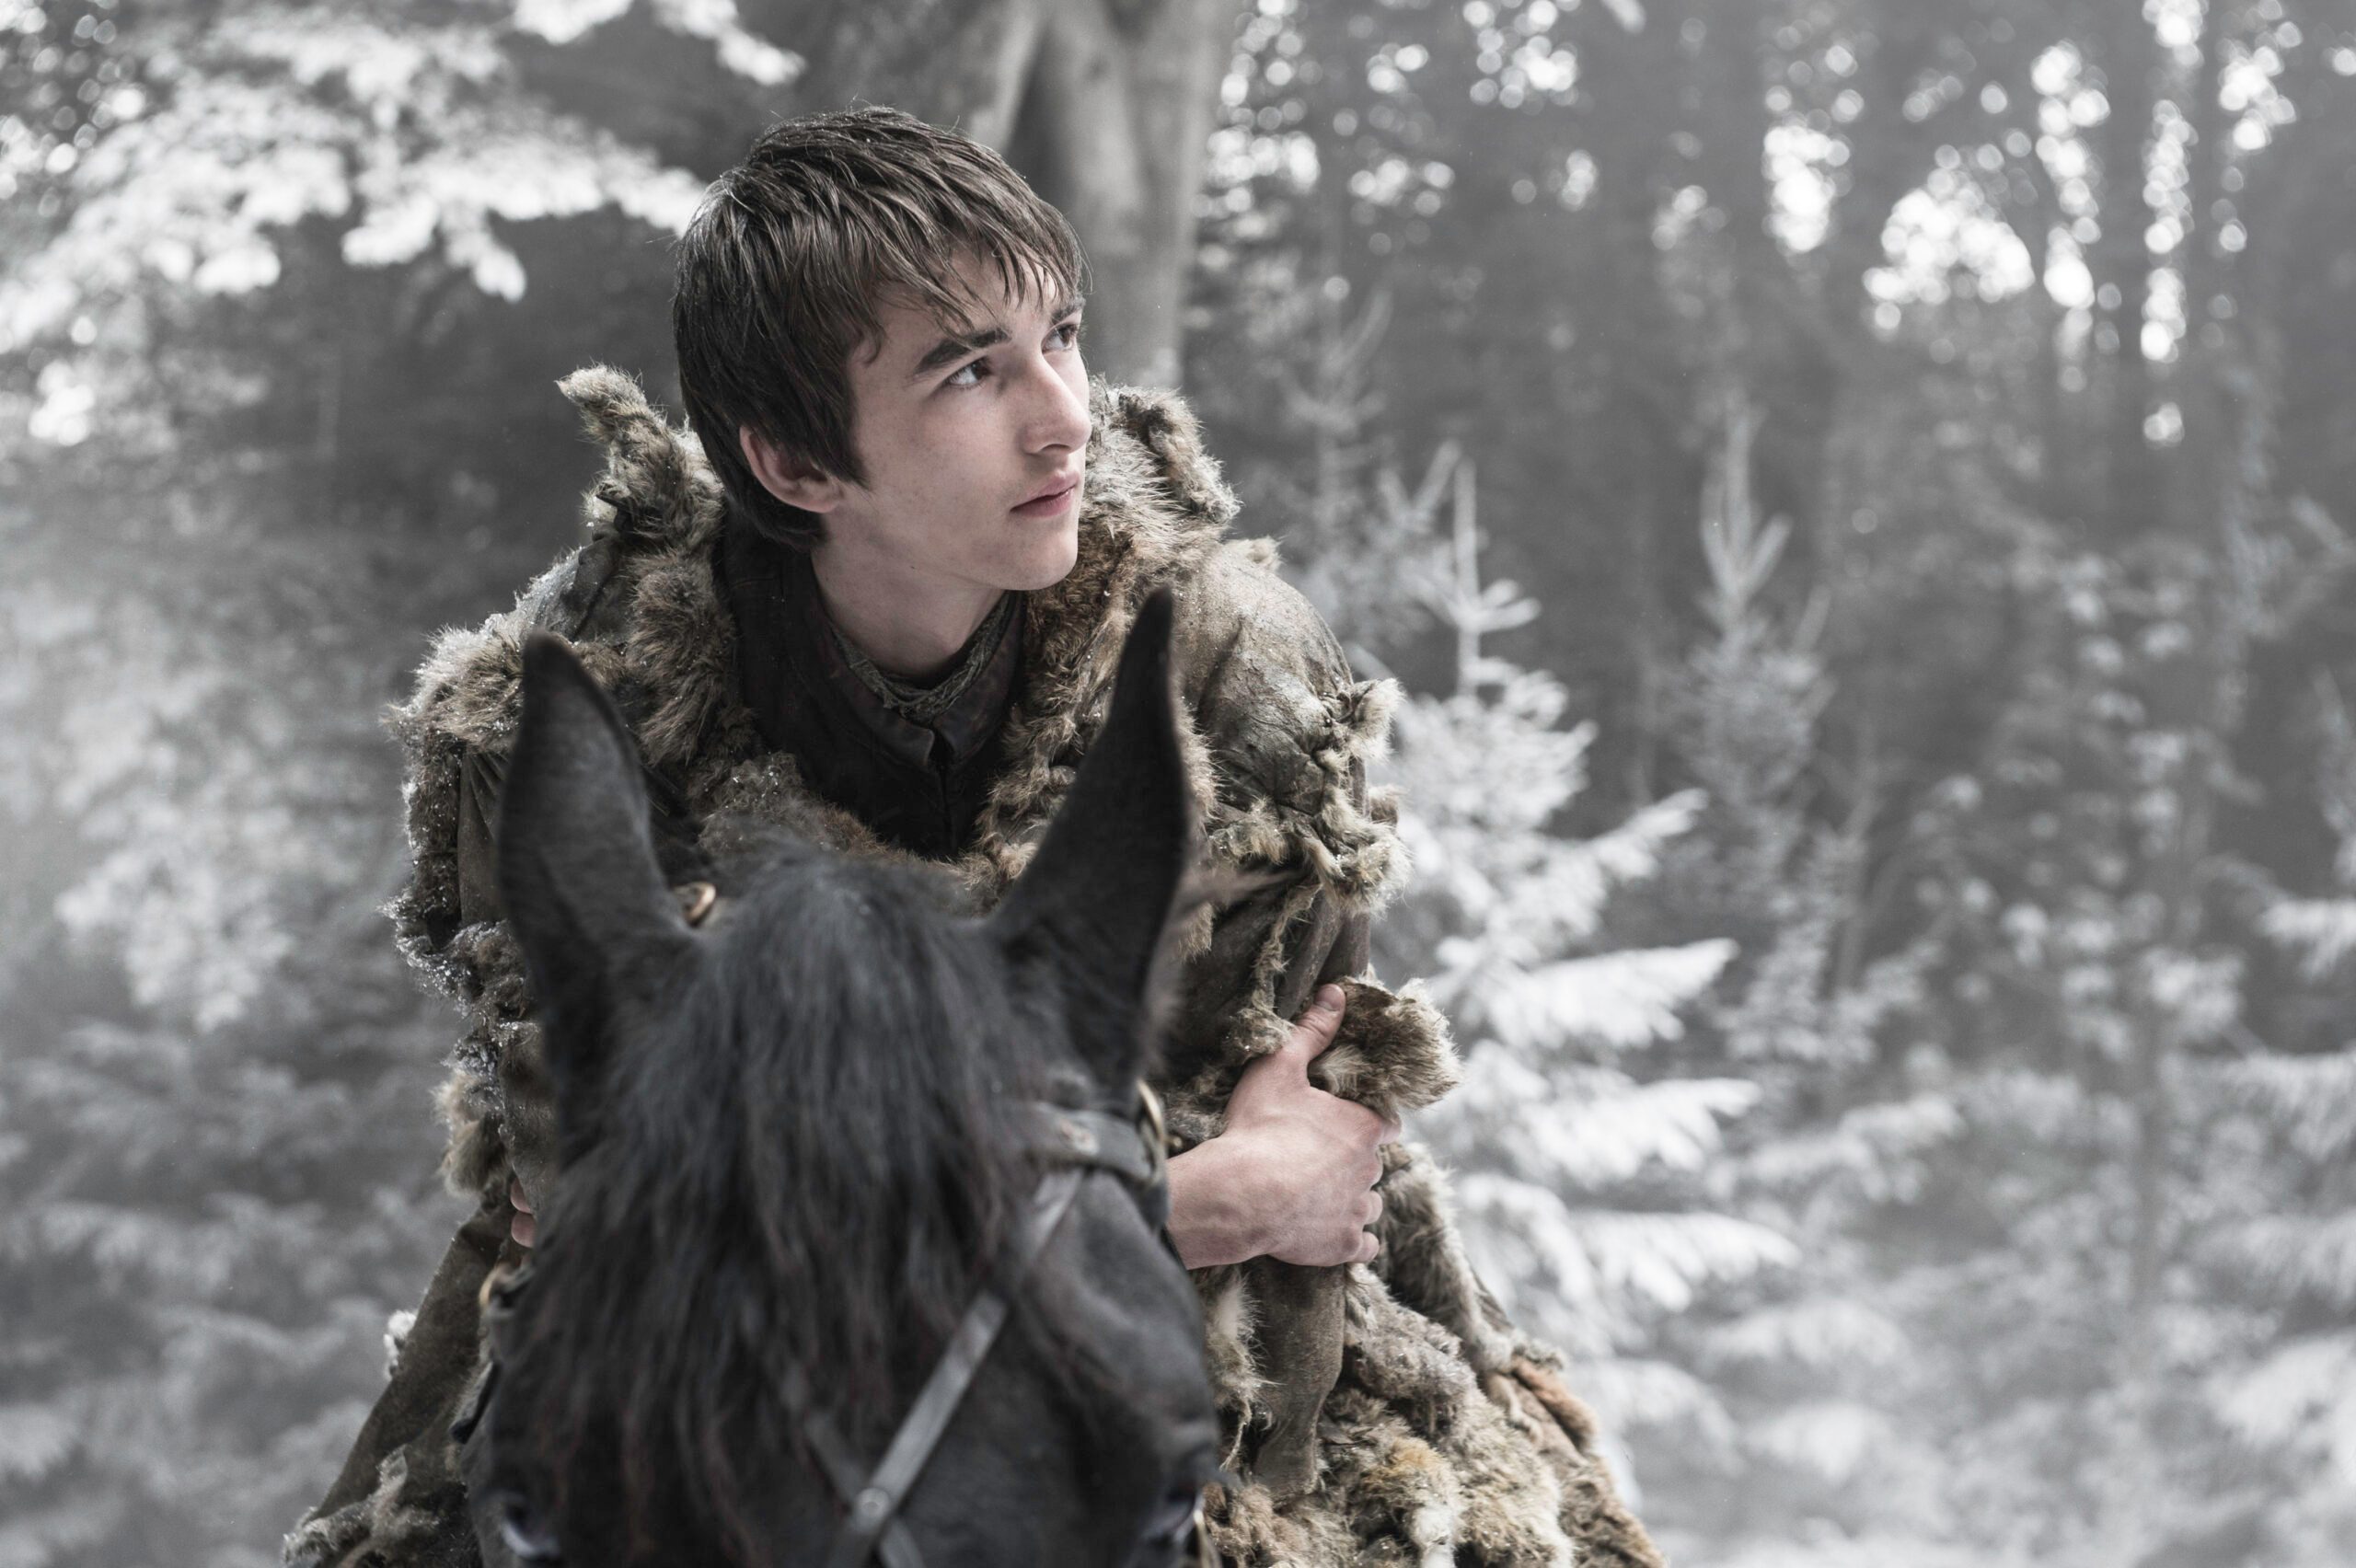 [IN PHOTOS] ‘Game of Thrones’ season 6 finale: Sneak peek